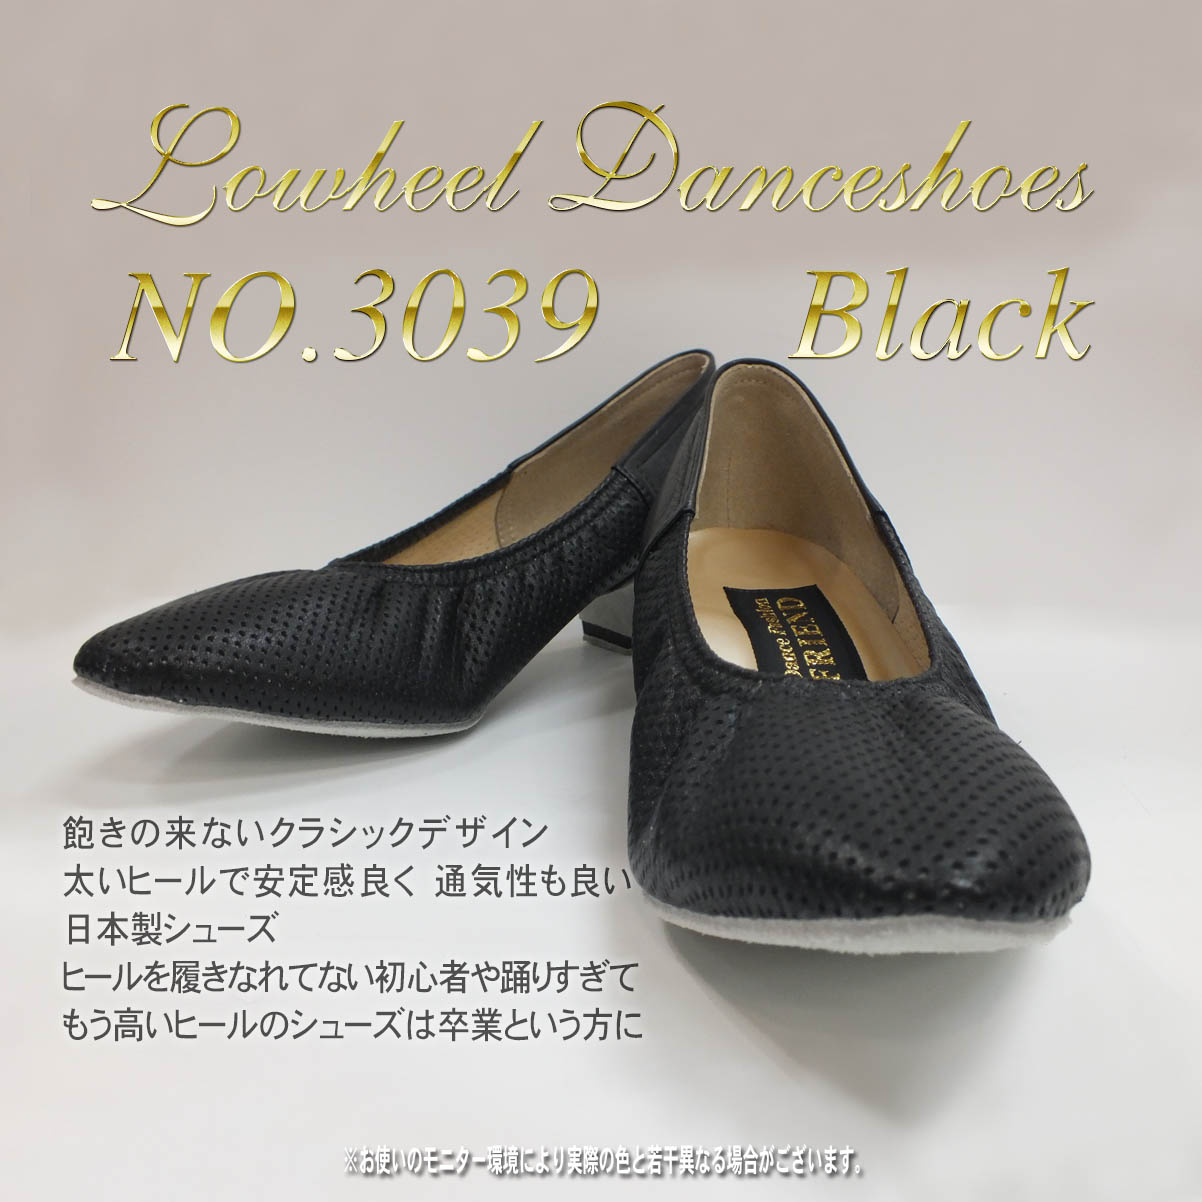 NO.3039 Lowheel Danceshoes Black 飽きの来ないクラシックデザイン 太いヒールで安定感良く 通気性も良い日本製シューズ ヒールを履きなれてない初心者や踊りすぎて もう高いヒールのシューズは卒業という方に